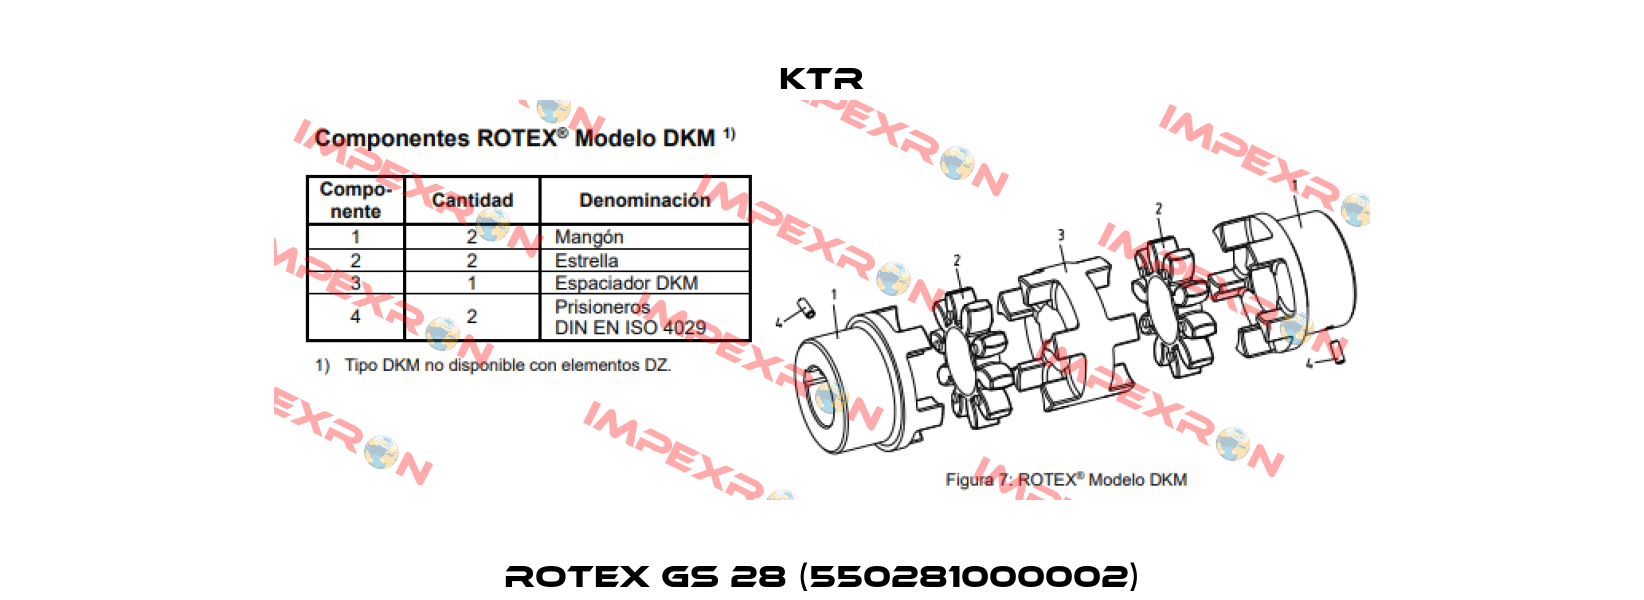 ROTEX GS 28 (550281000002) KTR